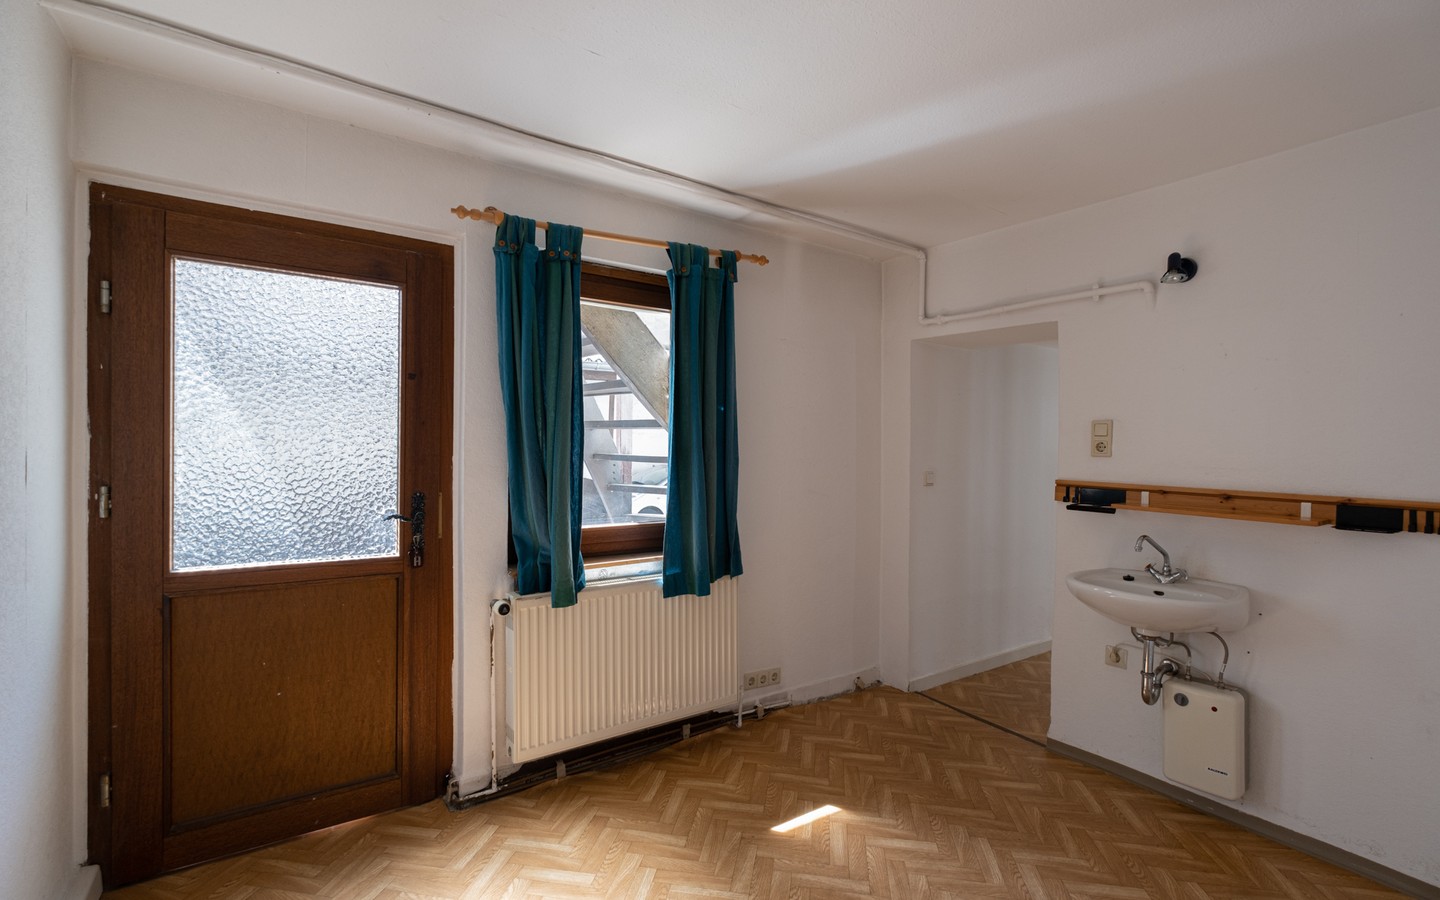 Zimmer 6 Wohnung Nr. 1 - Mehrfamilienhaus mit beeindruckender Historie und Potential in begehrter Wohnlage von Handschuhsheim